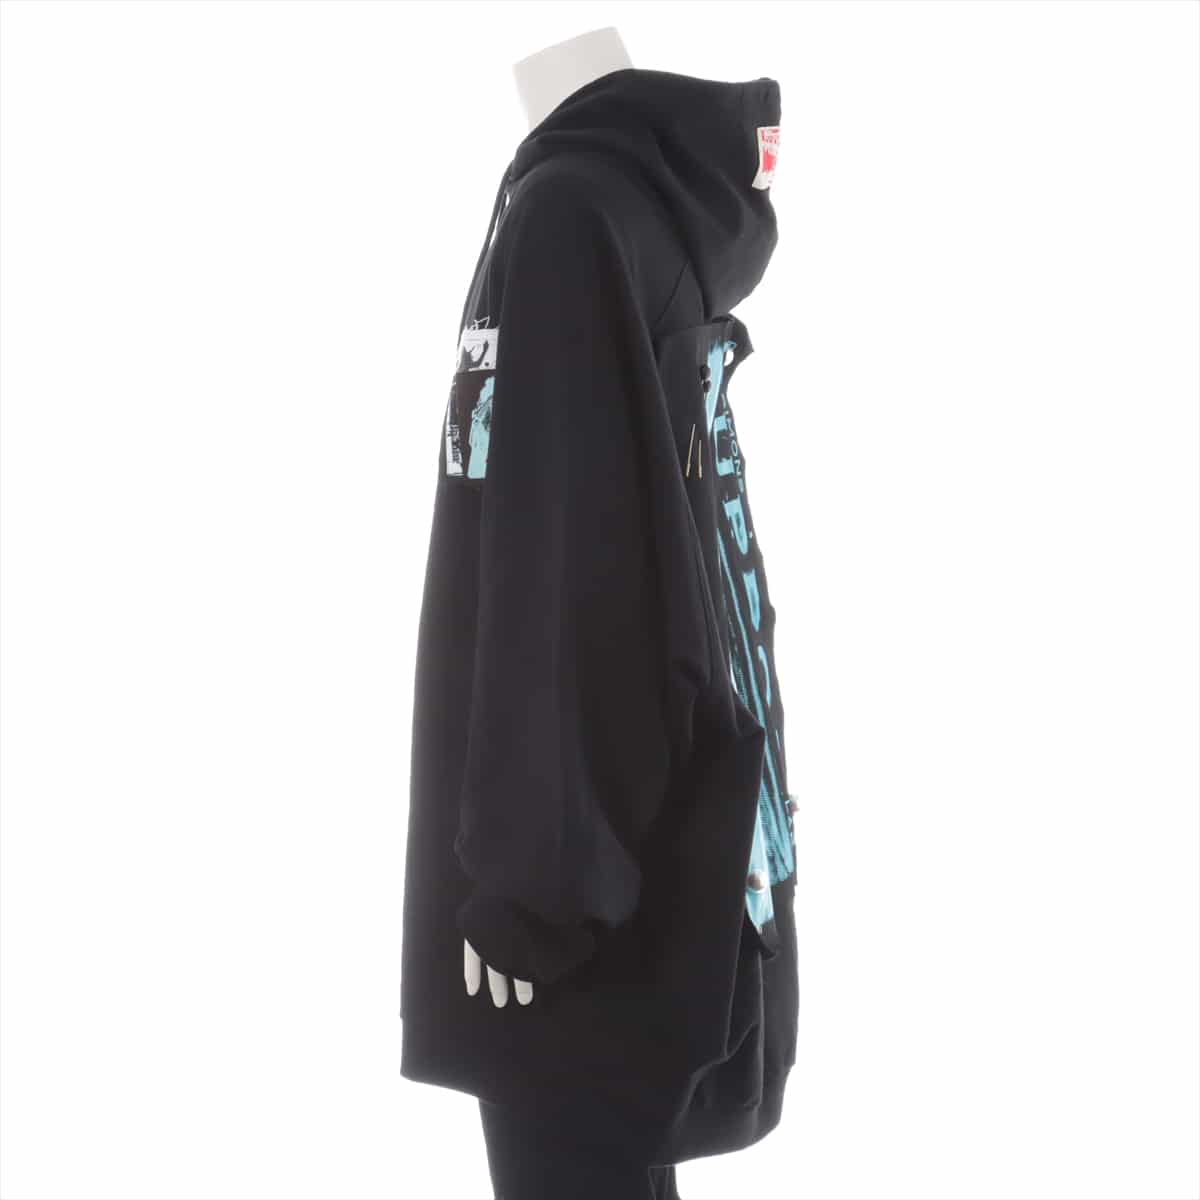 ラフシモンズ 20SS コットン パーカー L メンズ ブラック  Oversized hoodie with patches & pins